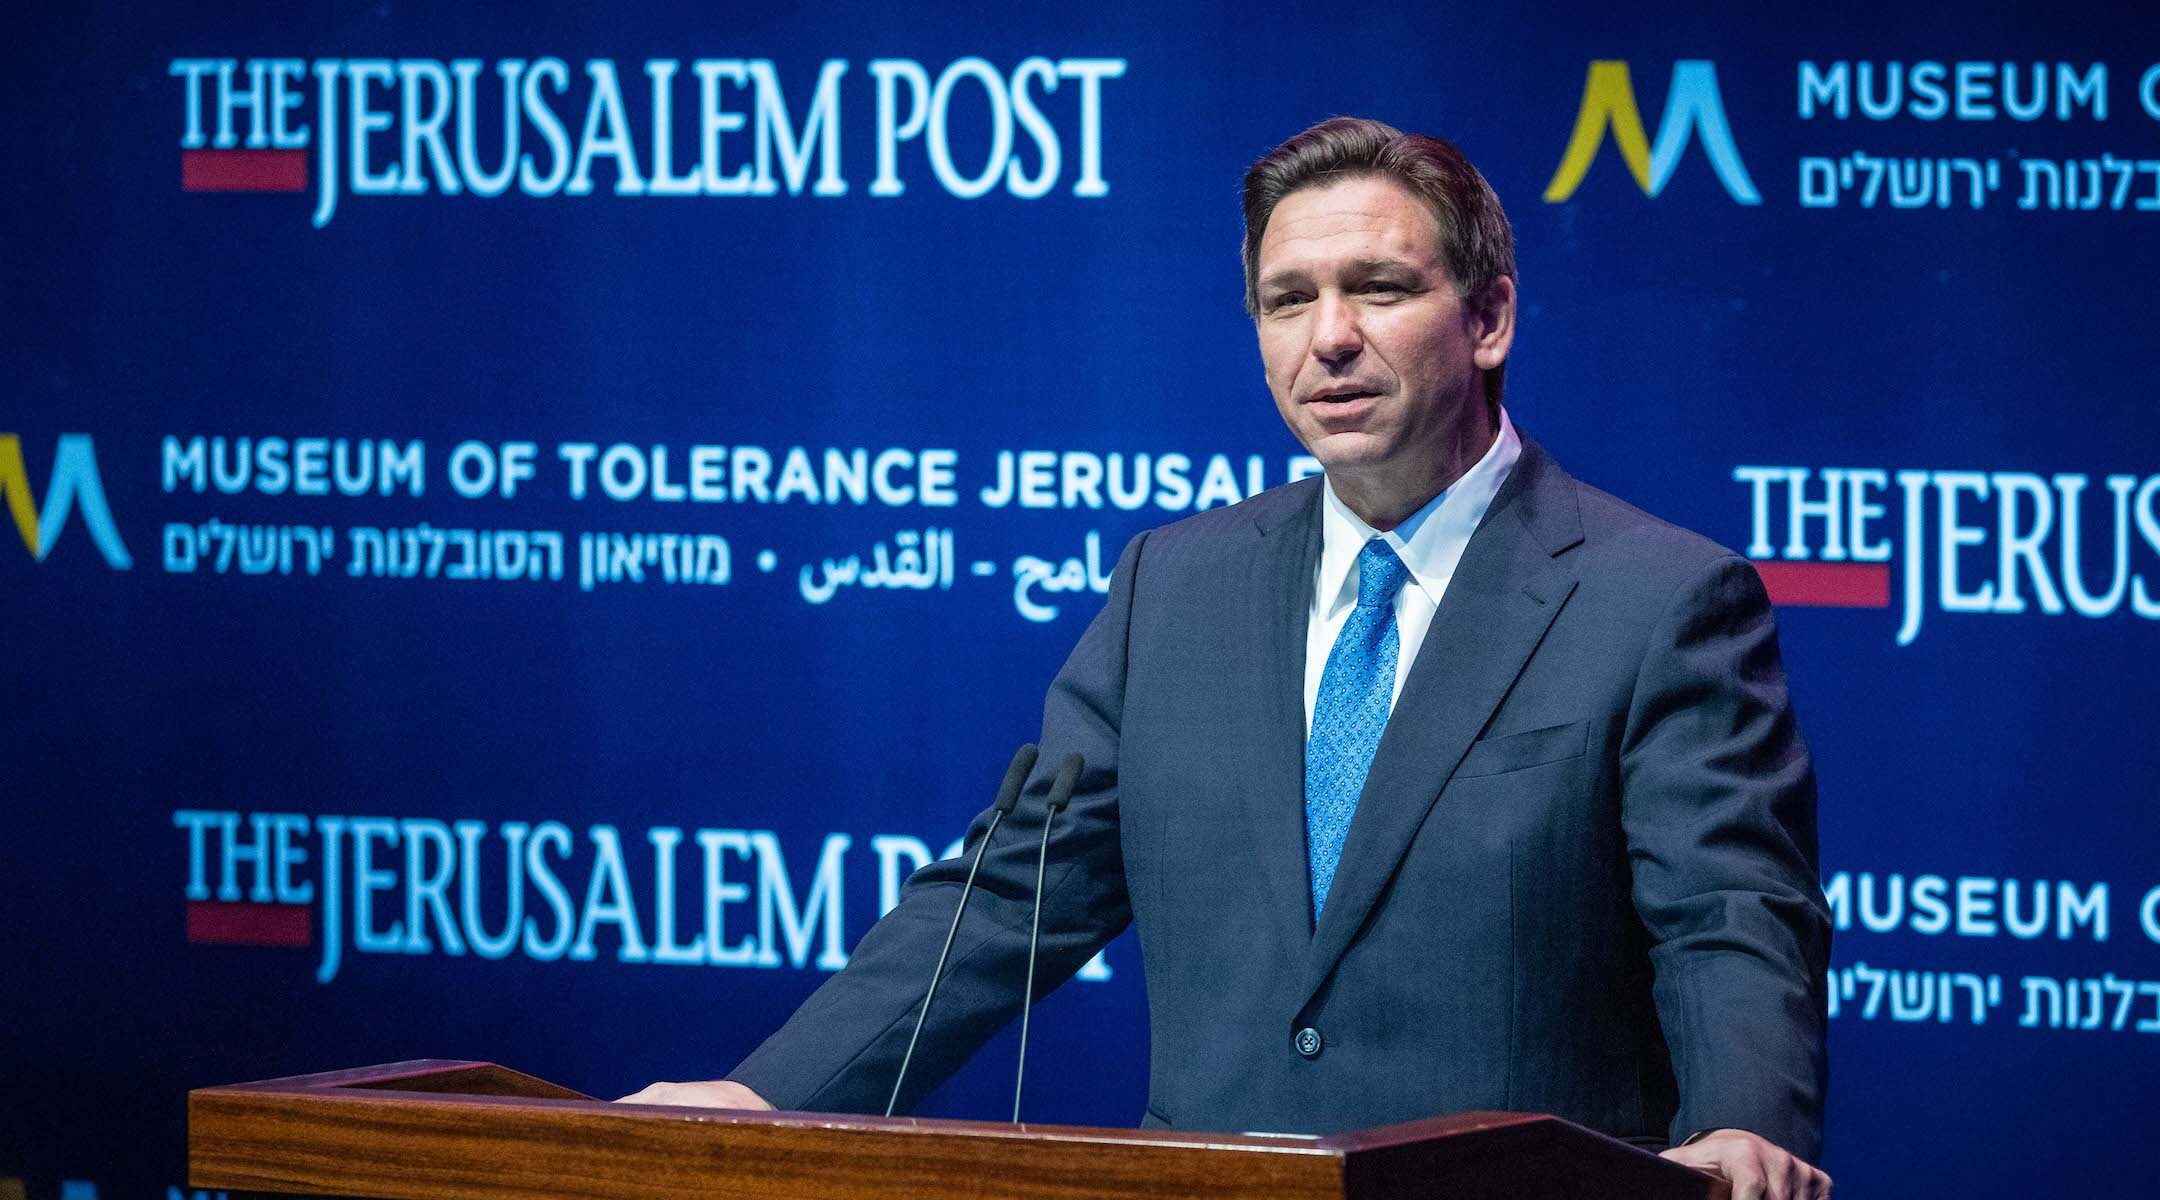 Florida Gov. Ron DeSantis speaks at a Jerusalem Post conference at the Museum of Tolerance in Jerusalem. (Yonatan Sindel/Flash90)